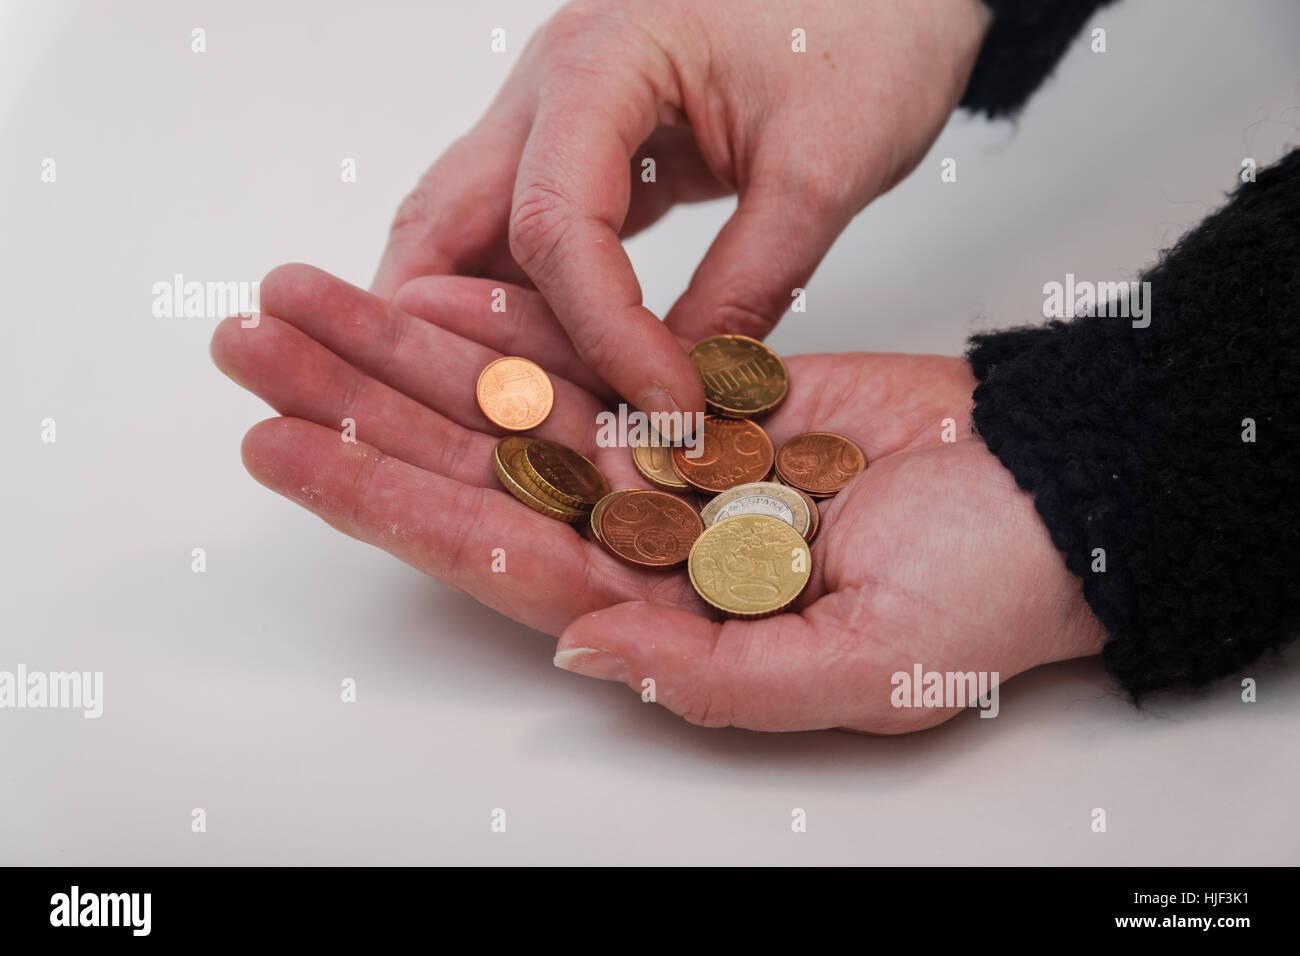 euro, coins, bill, money, hand, centstck, euro banknote, eurocent, euroschein, Stock Photo